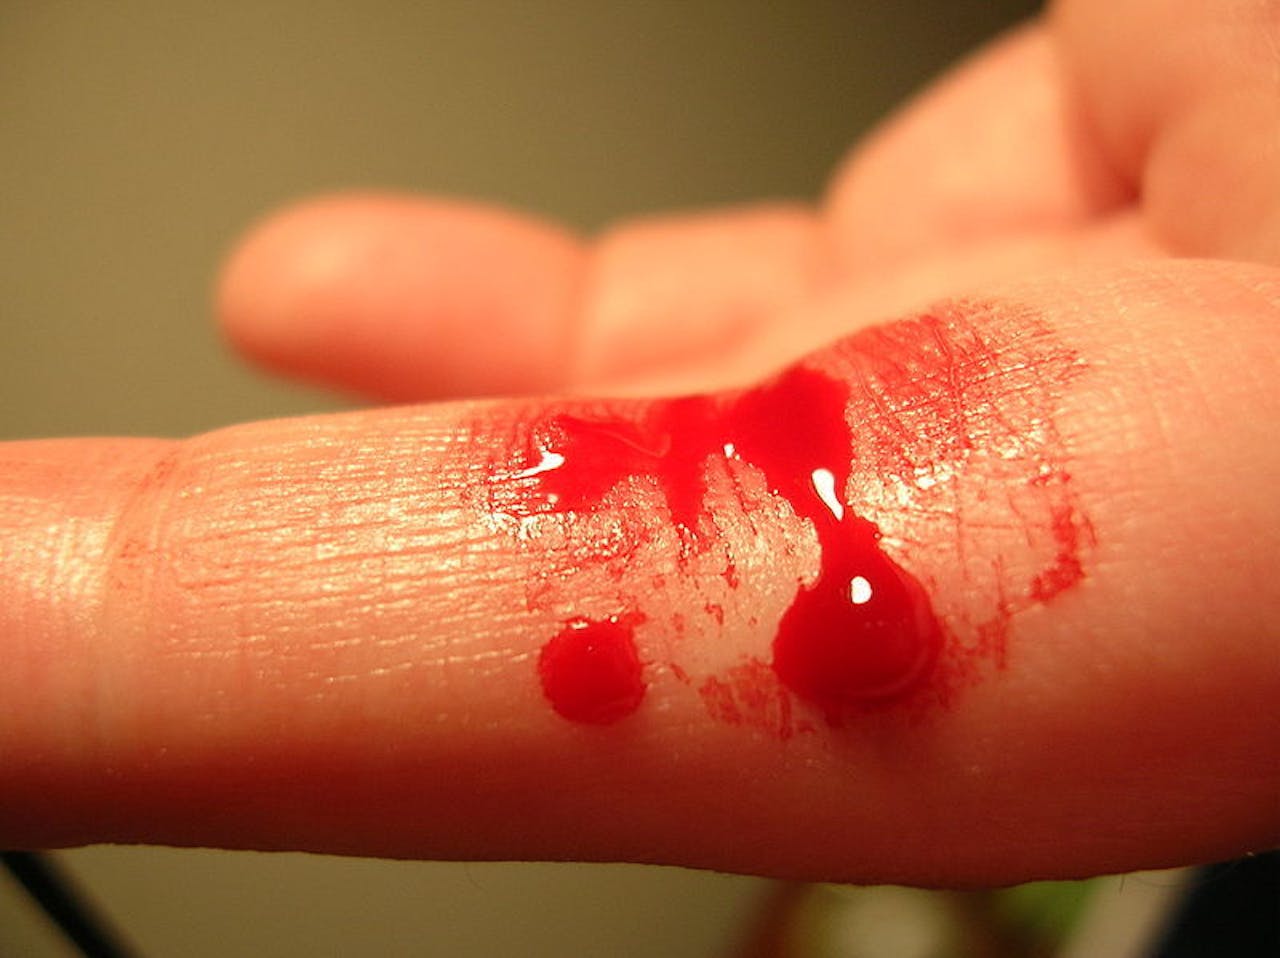 De vinger van een persoon met rood bloed erop.